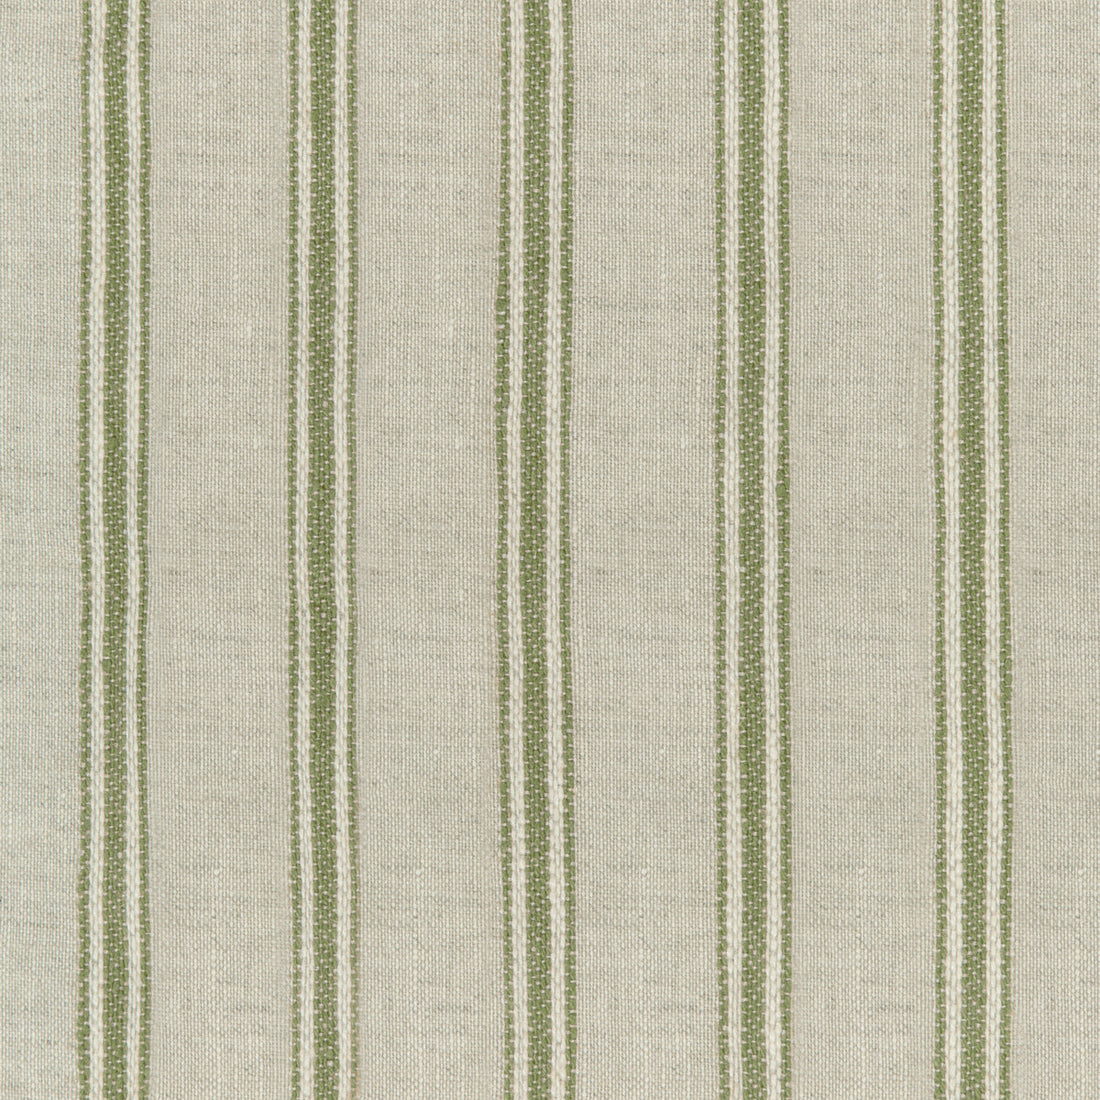 Kravet Design fabric in 4842-316 color - pattern 4842.316.0 - by Kravet Design